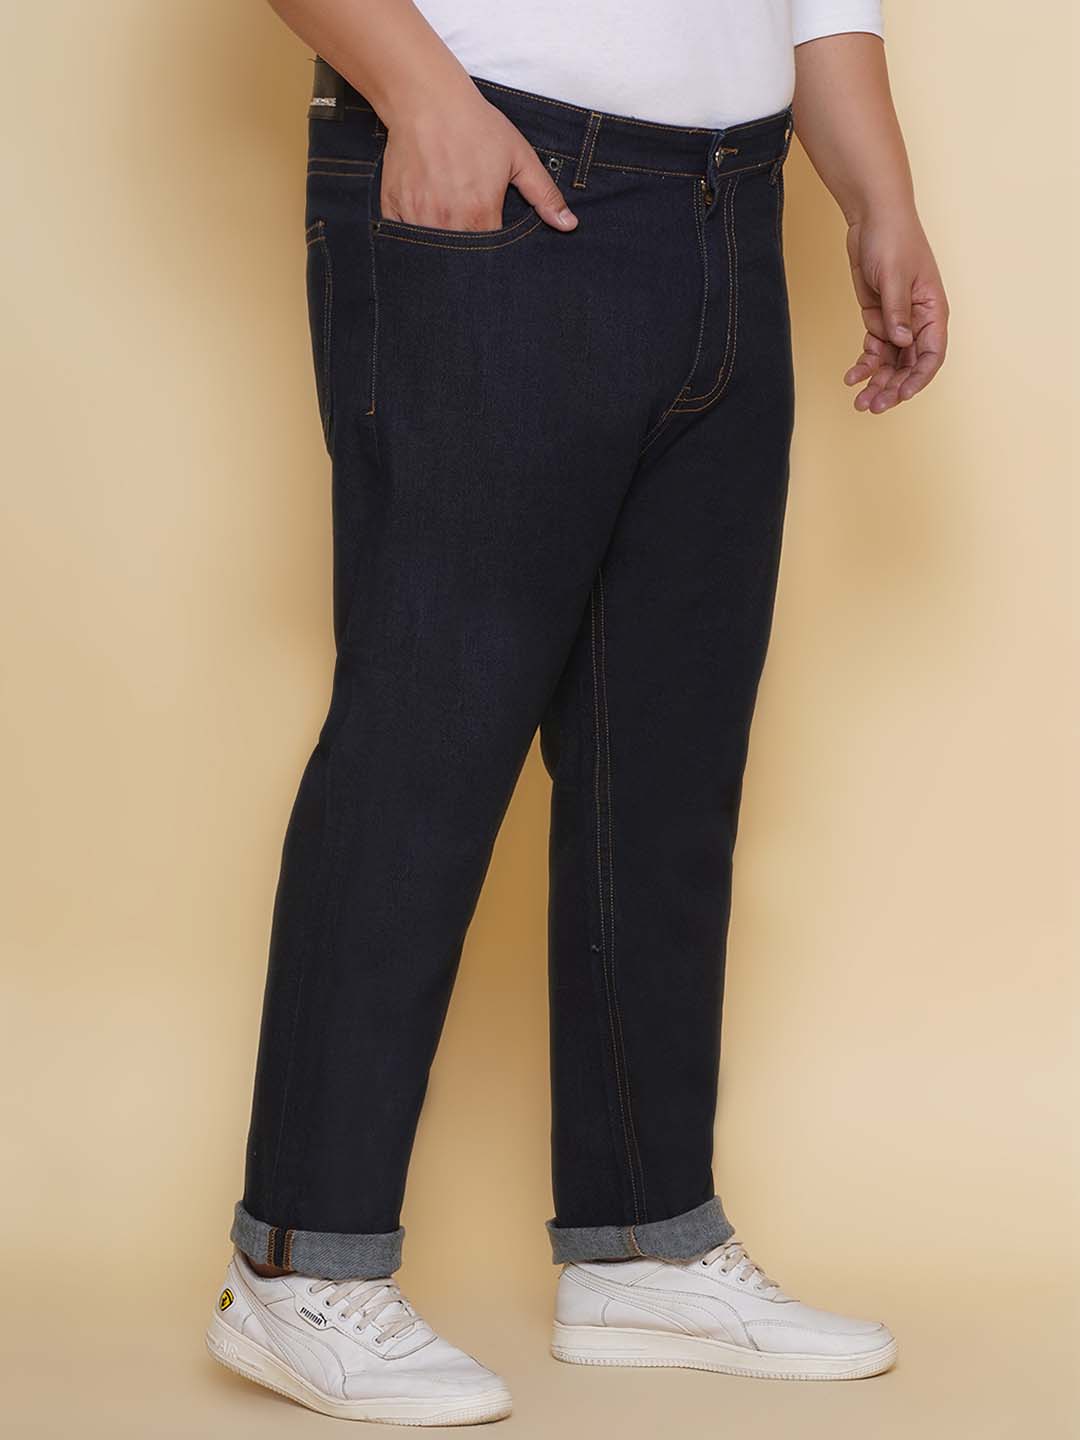 bottomwear/jeans/PJPJ60101/pjpj60101-3.jpg